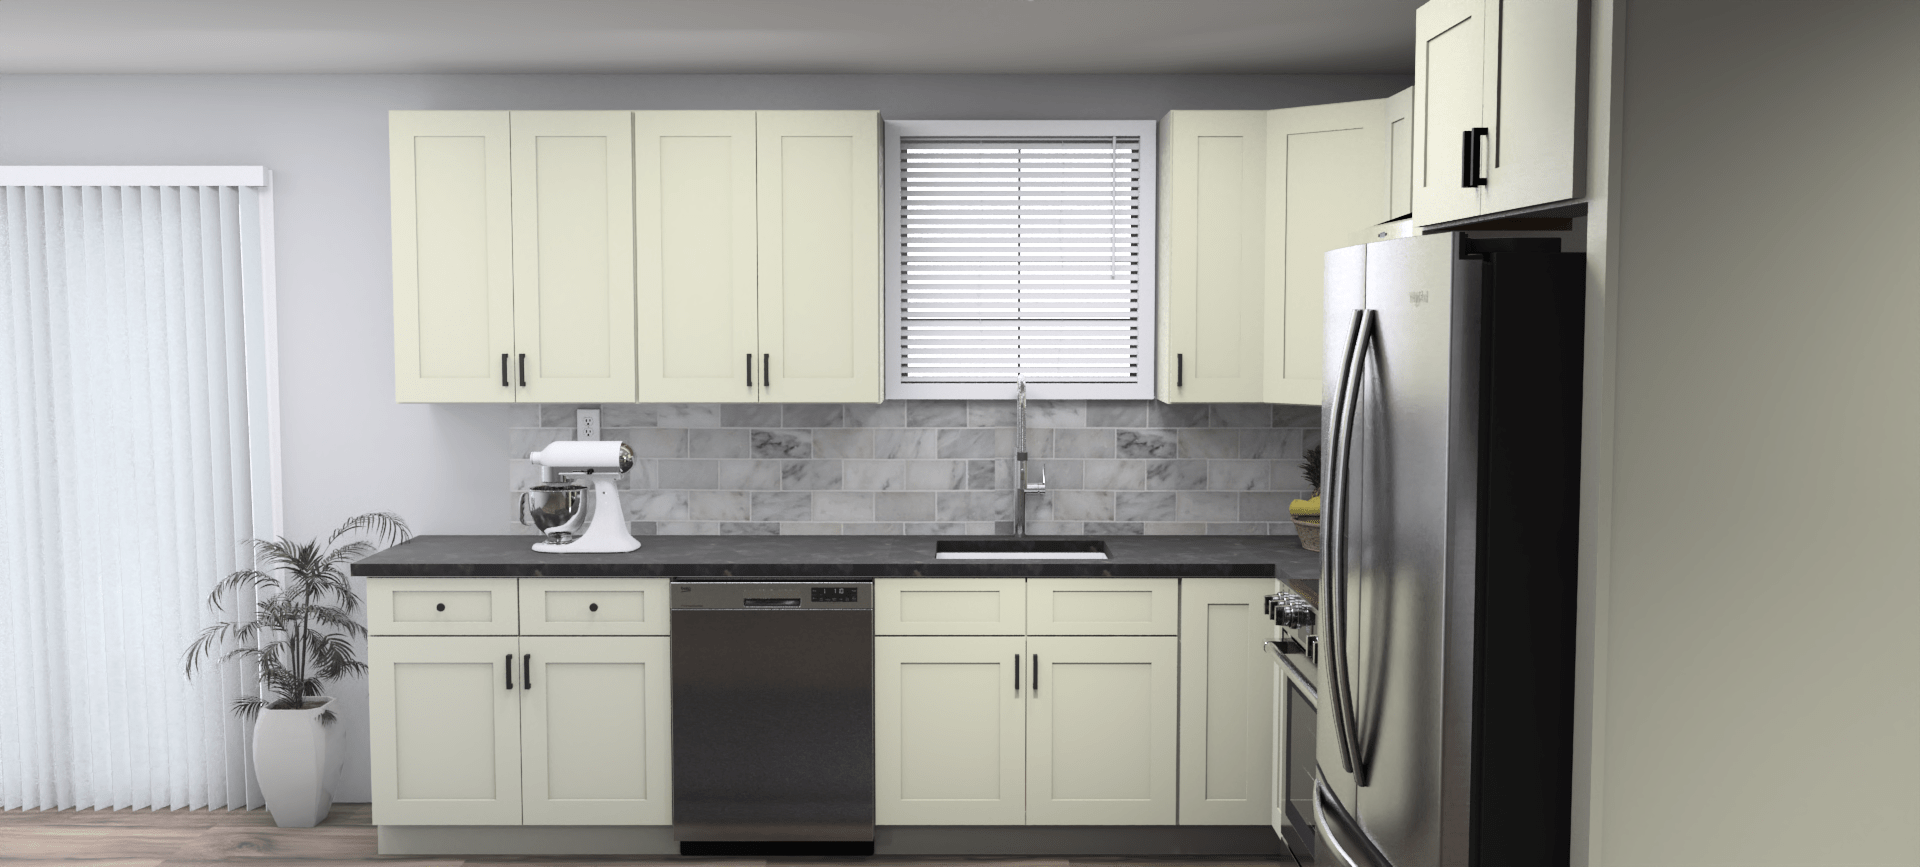 Fabuwood Allure Galaxy Linen 11 x 10 L Shaped Kitchen Side Layout Photo